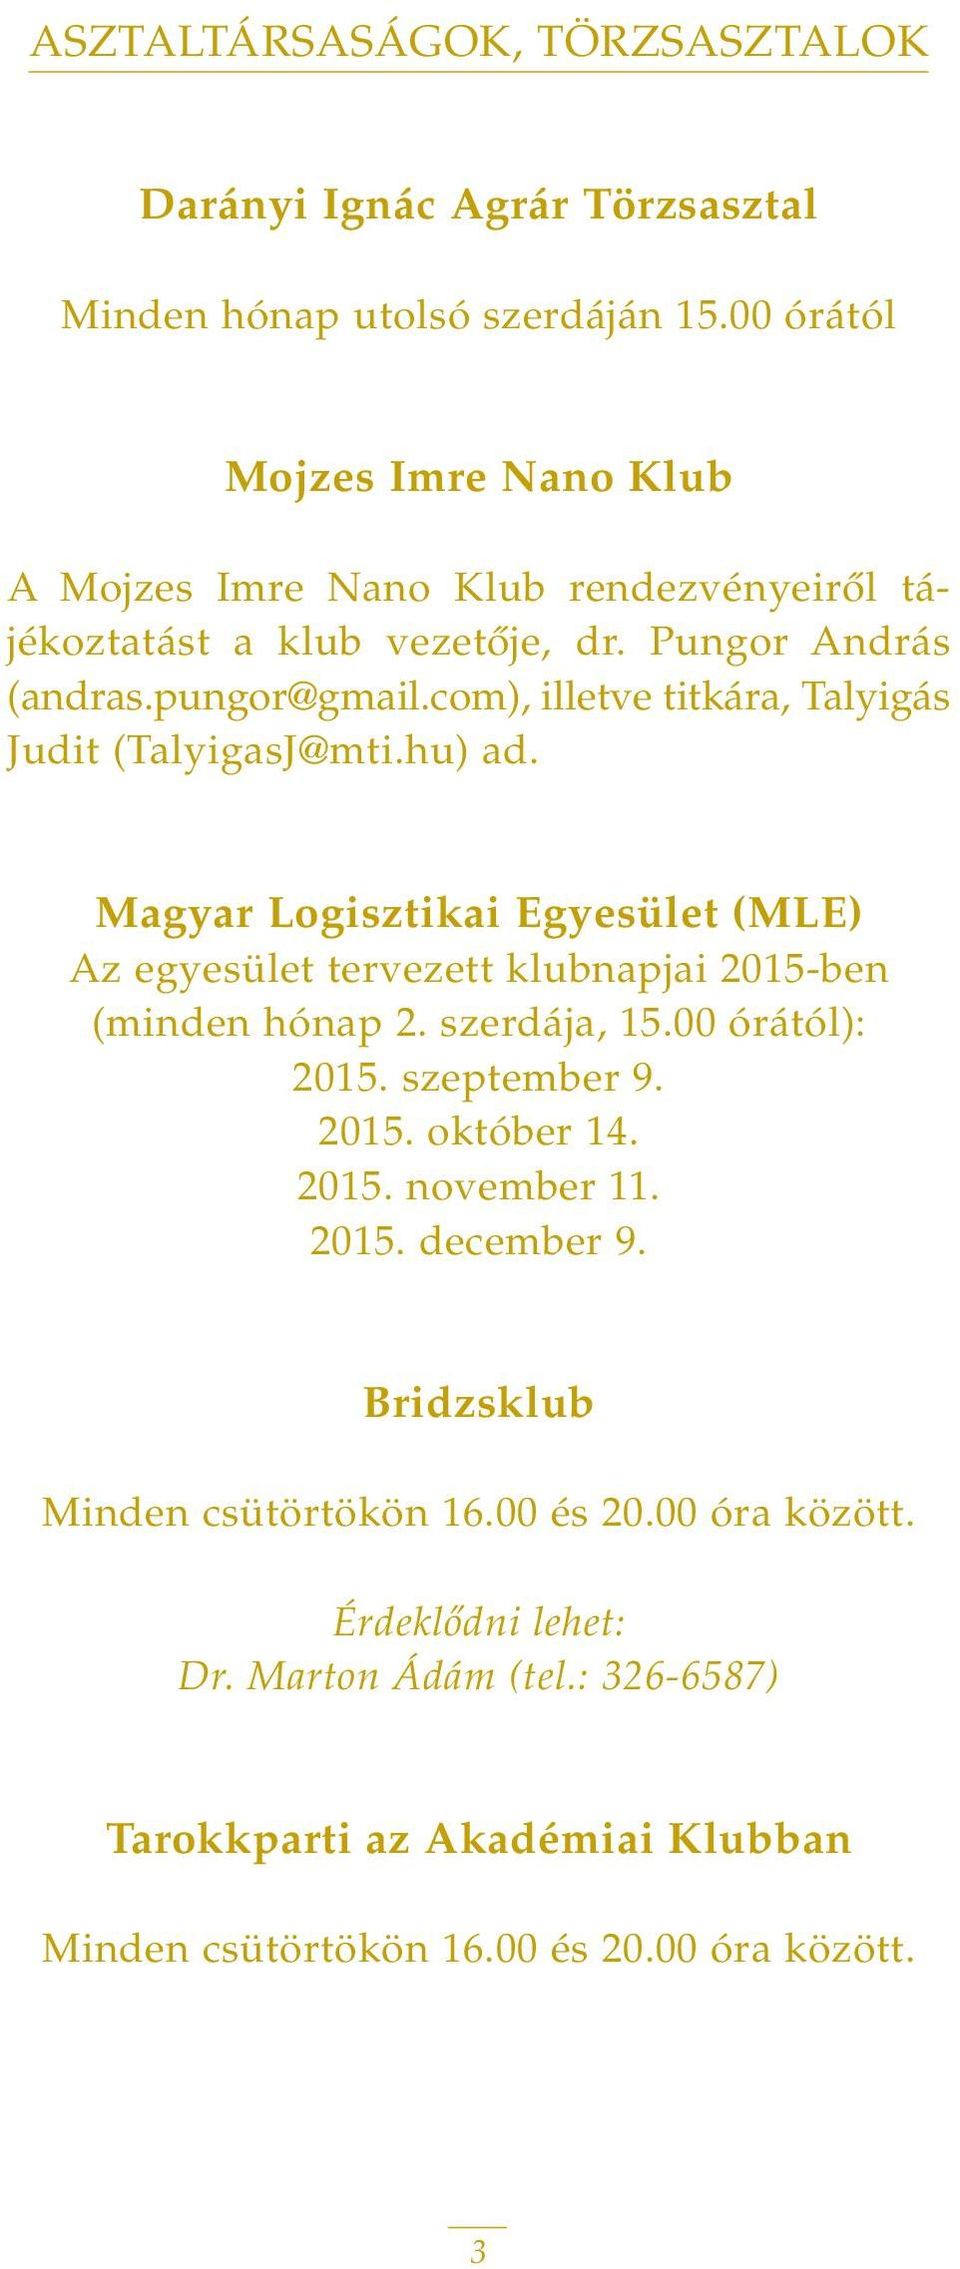 com), illetve titkára, Talyigás Judit (TalyigasJ@mti.hu) ad. Magyar Logisztikai Egyesület (MLE) Az egyesület tervezett klubnapjai 2015-ben (minden hónap 2. szerdája, 15.